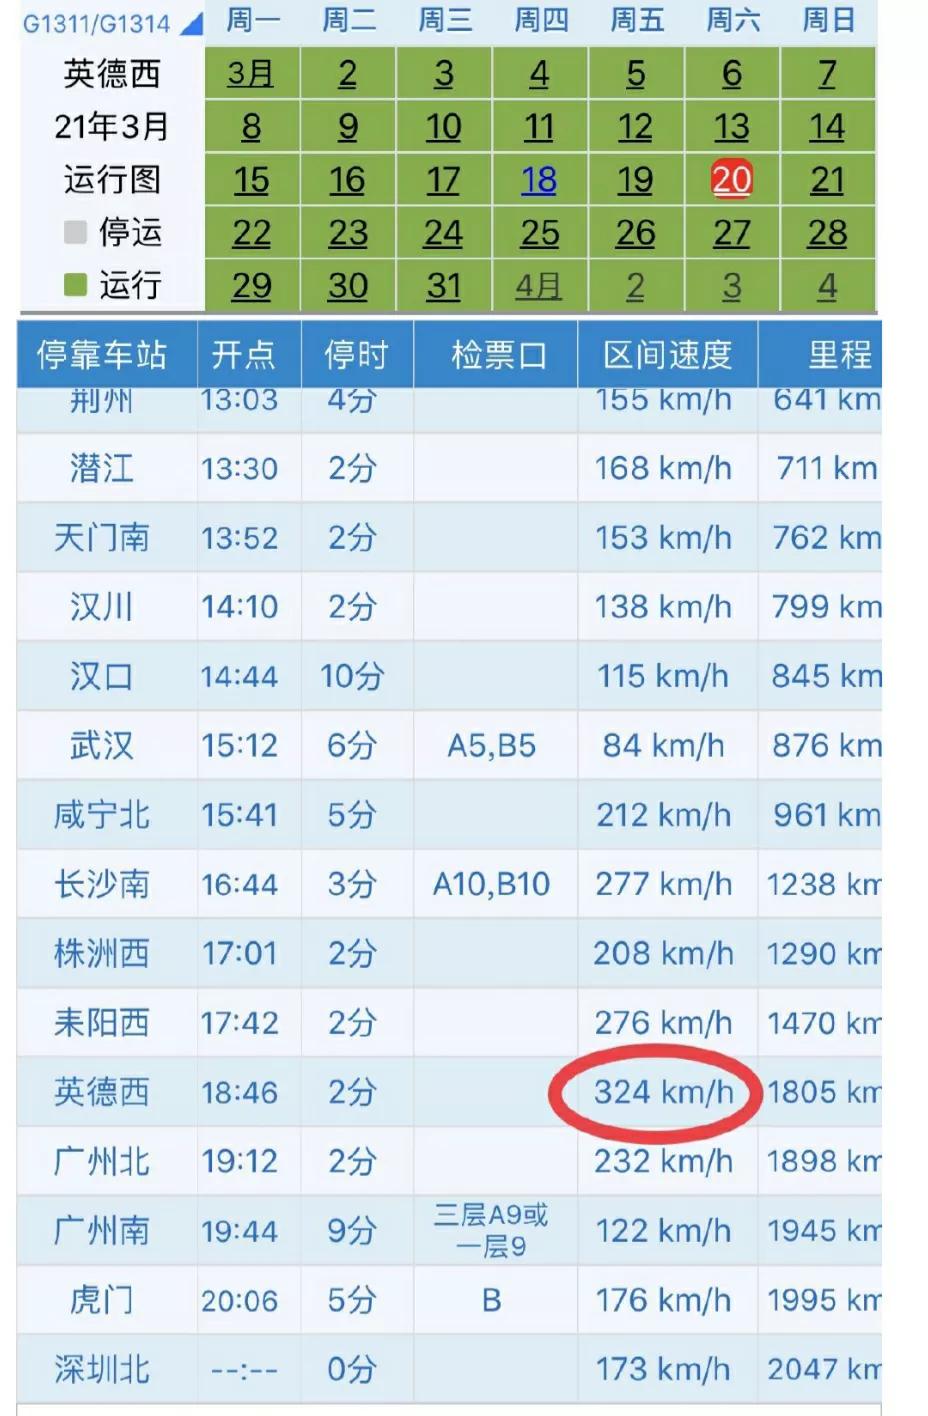 平均速度323.4km/h，G65高铁第一速是真材实料还是极具水分